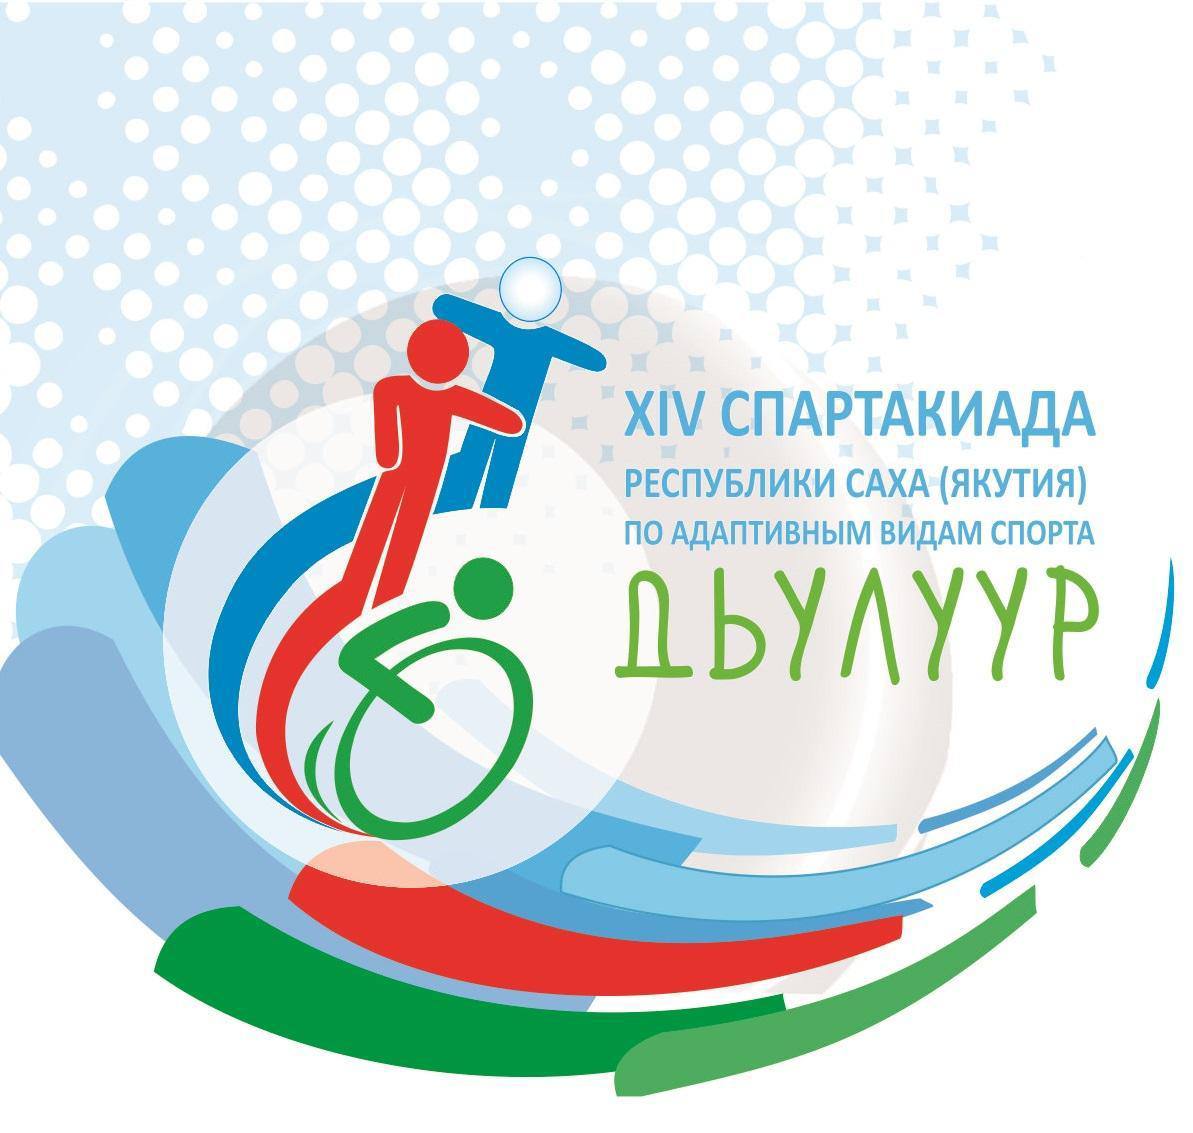 Церемония открытия спартакиады «Дьулуур» состоится 14 июля в Амге в Якутии